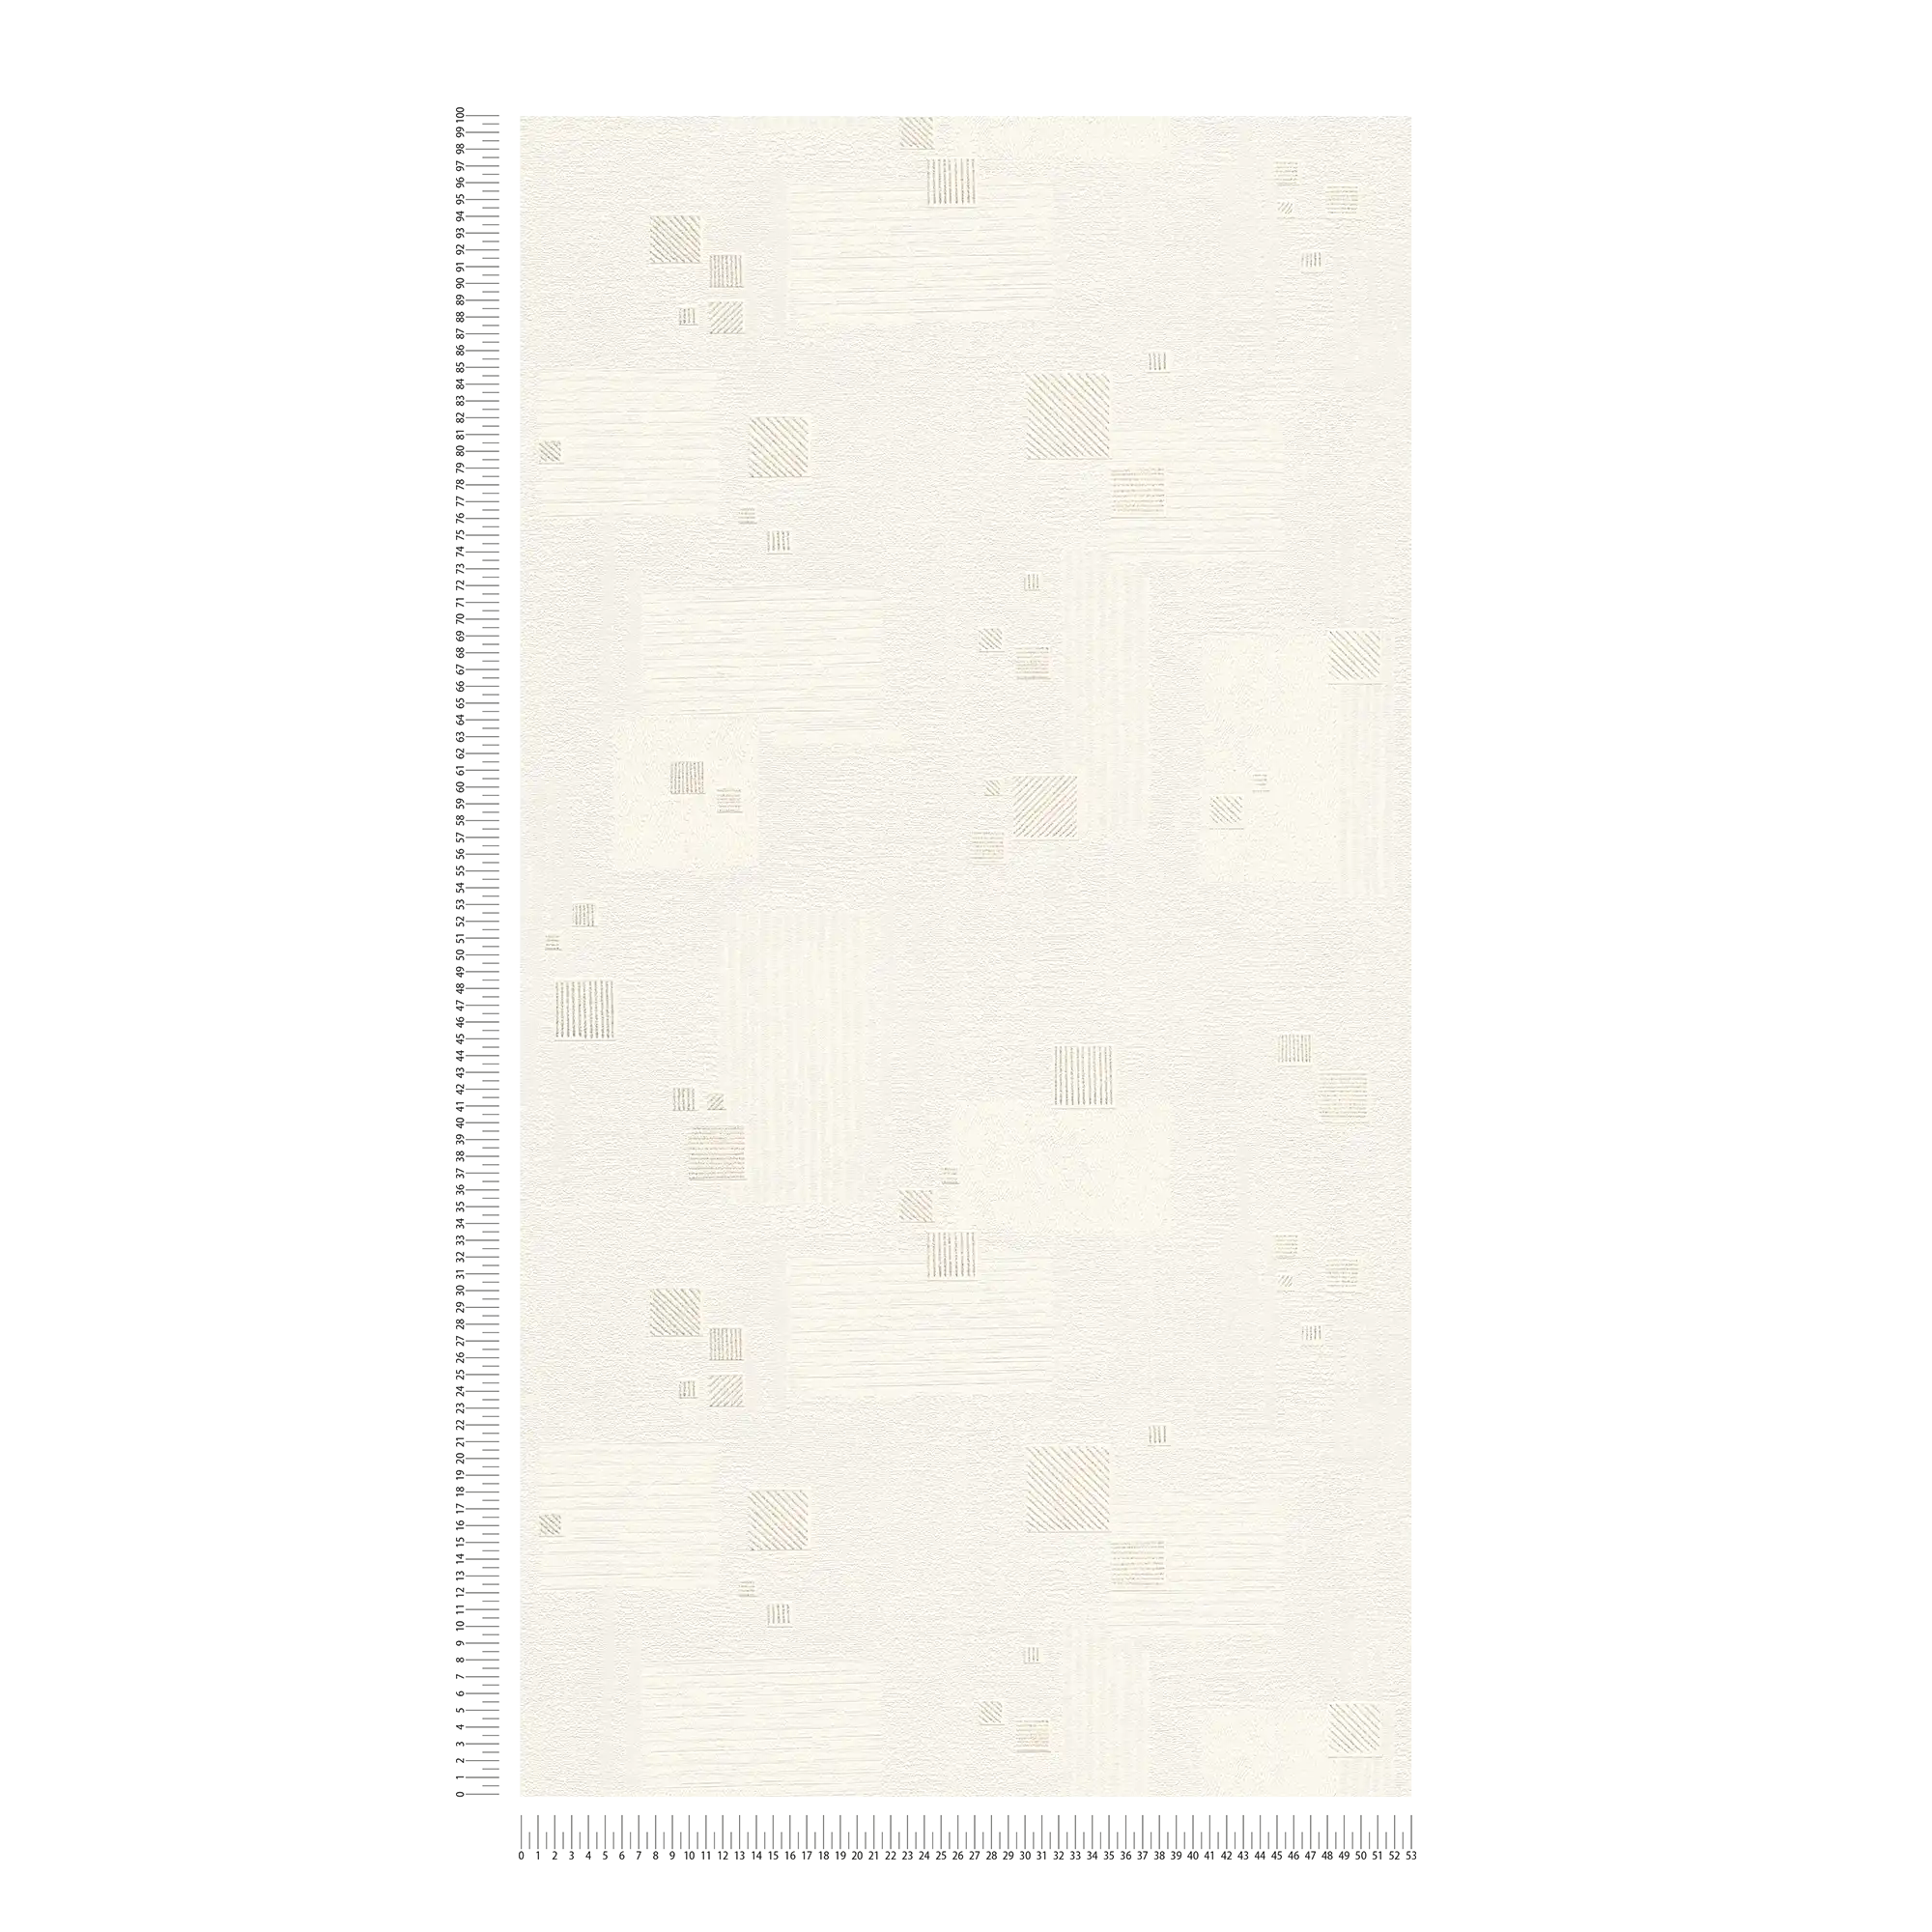             Vliestpaete retro pattern with plaster look structure - White
        